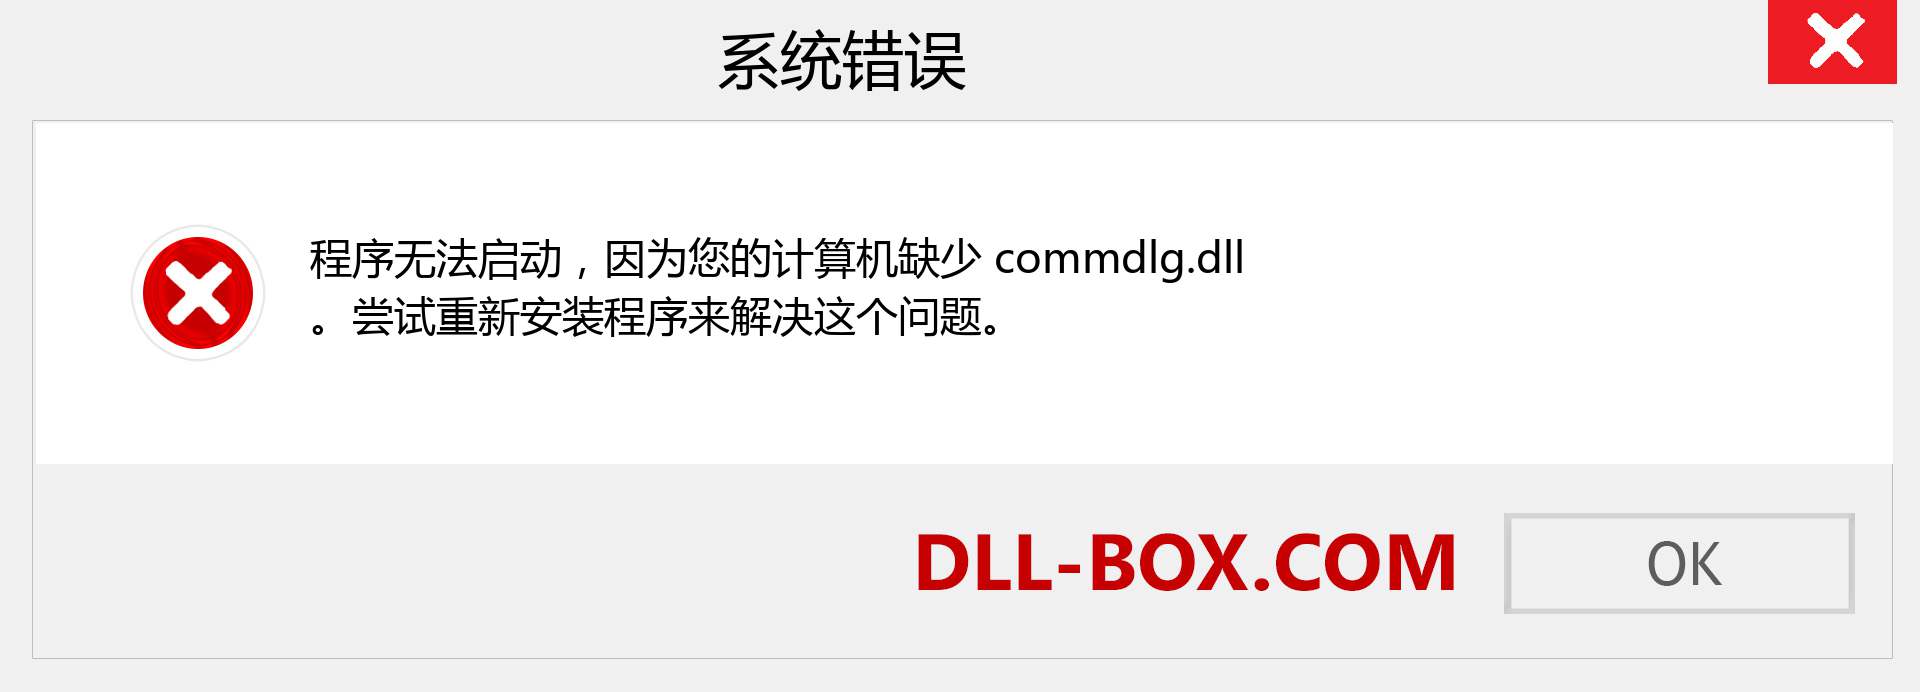 commdlg.dll 文件丢失？。 适用于 Windows 7、8、10 的下载 - 修复 Windows、照片、图像上的 commdlg dll 丢失错误